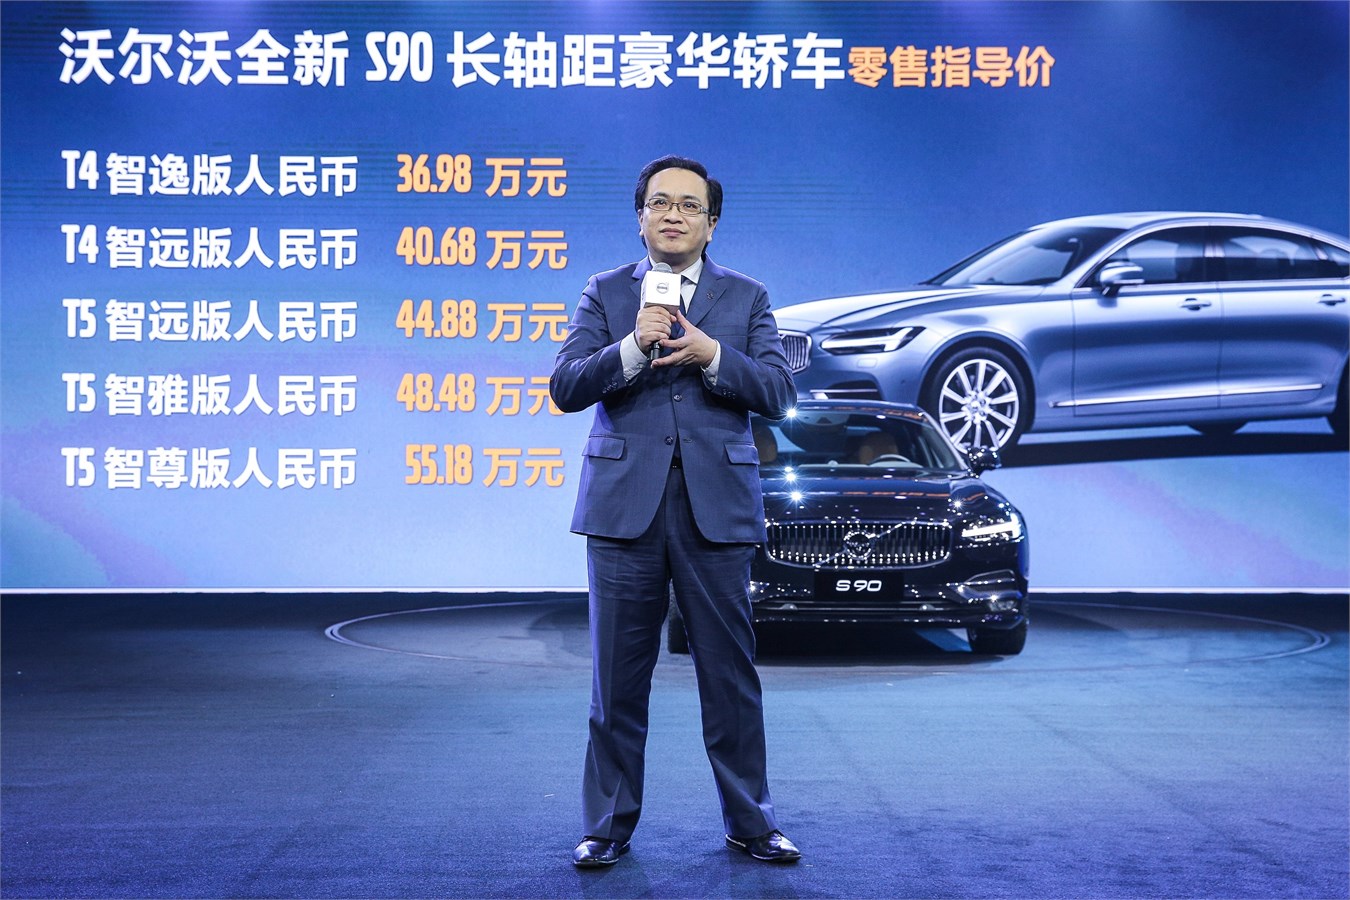 沃尔沃汽车中国销售公司总经理陈立哲公布上市价格